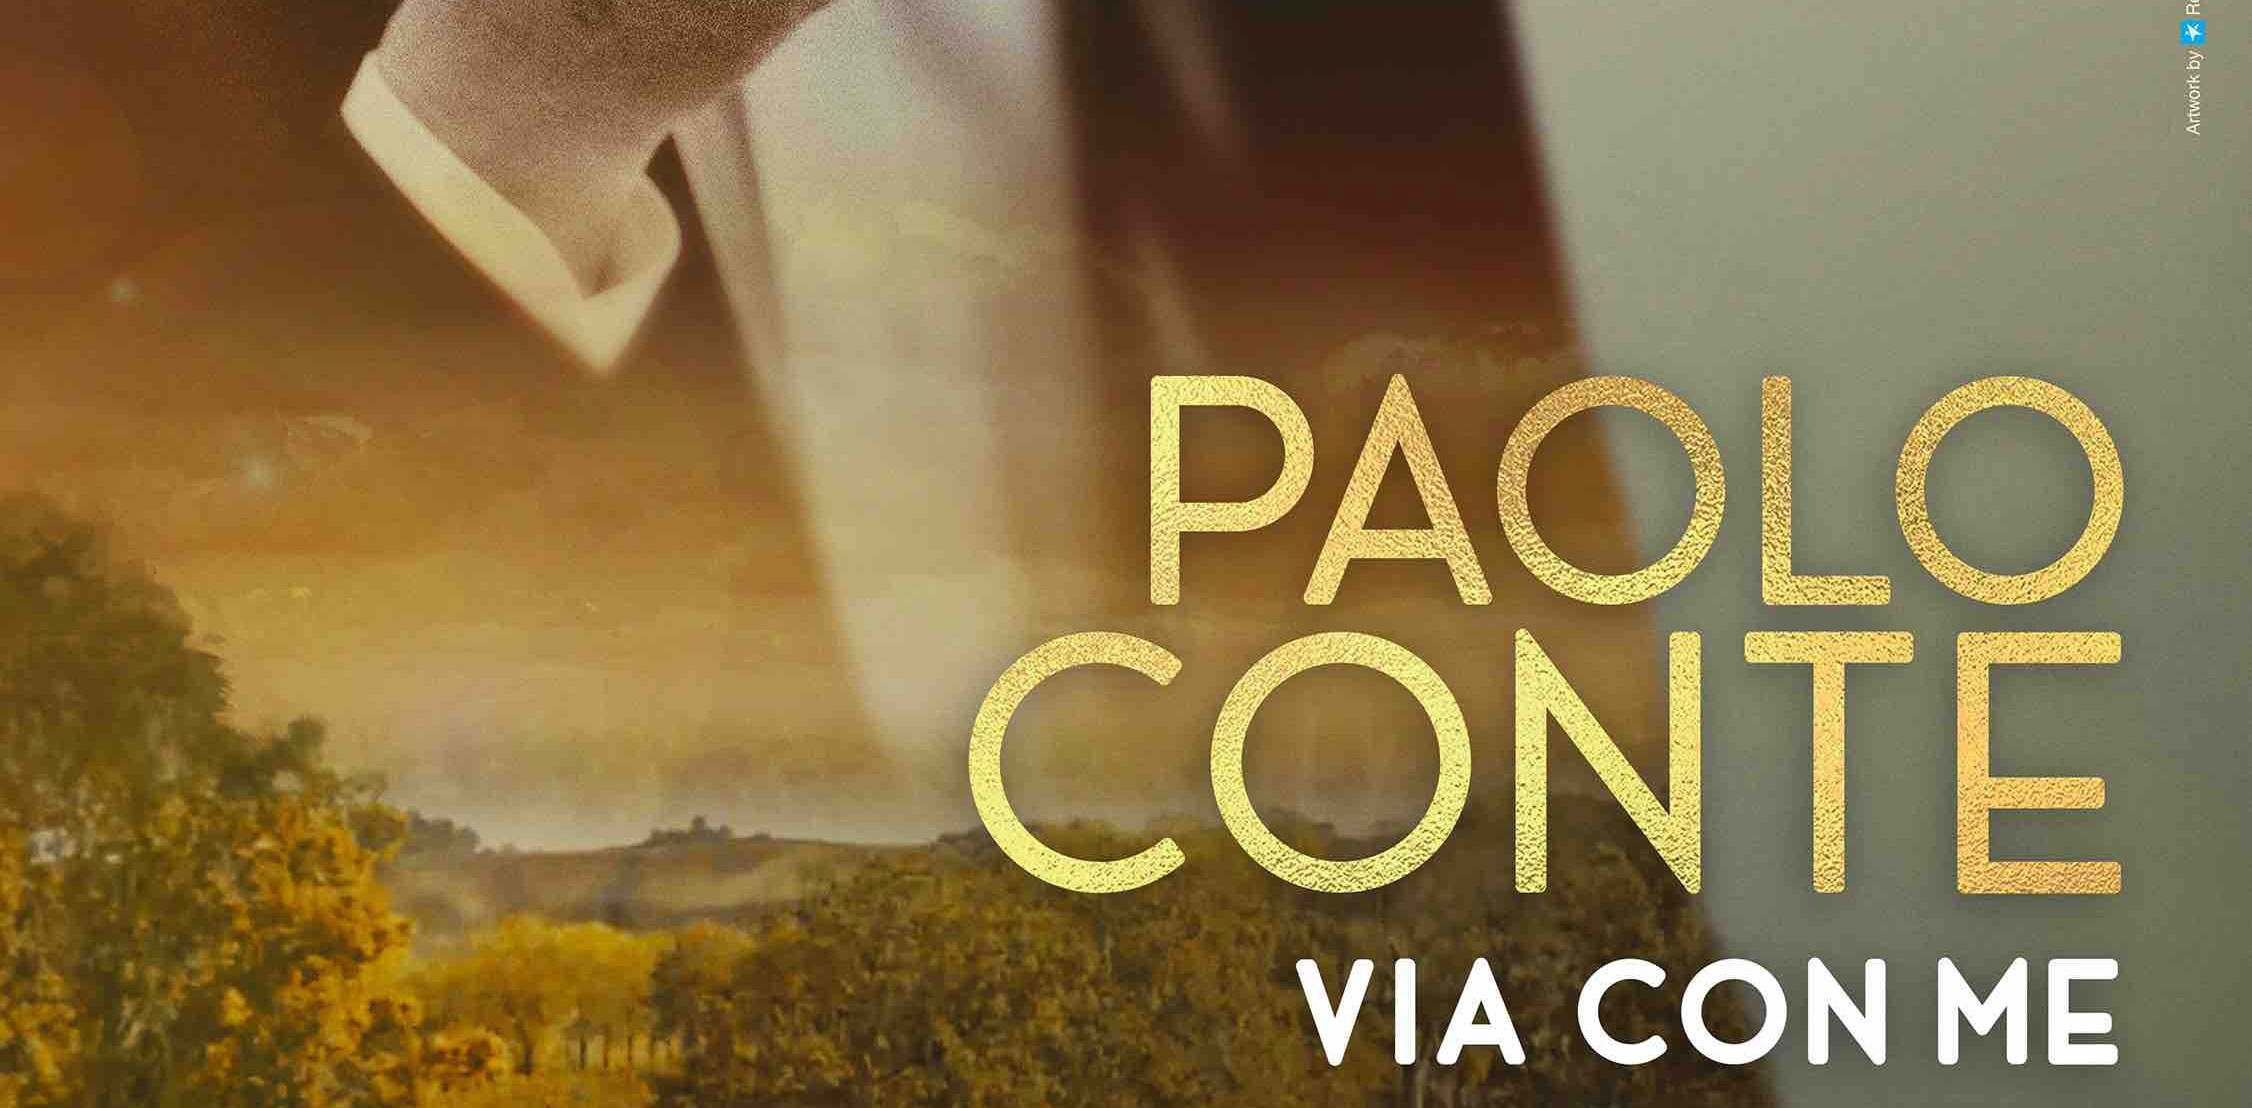 Paolo Conte, Via con me